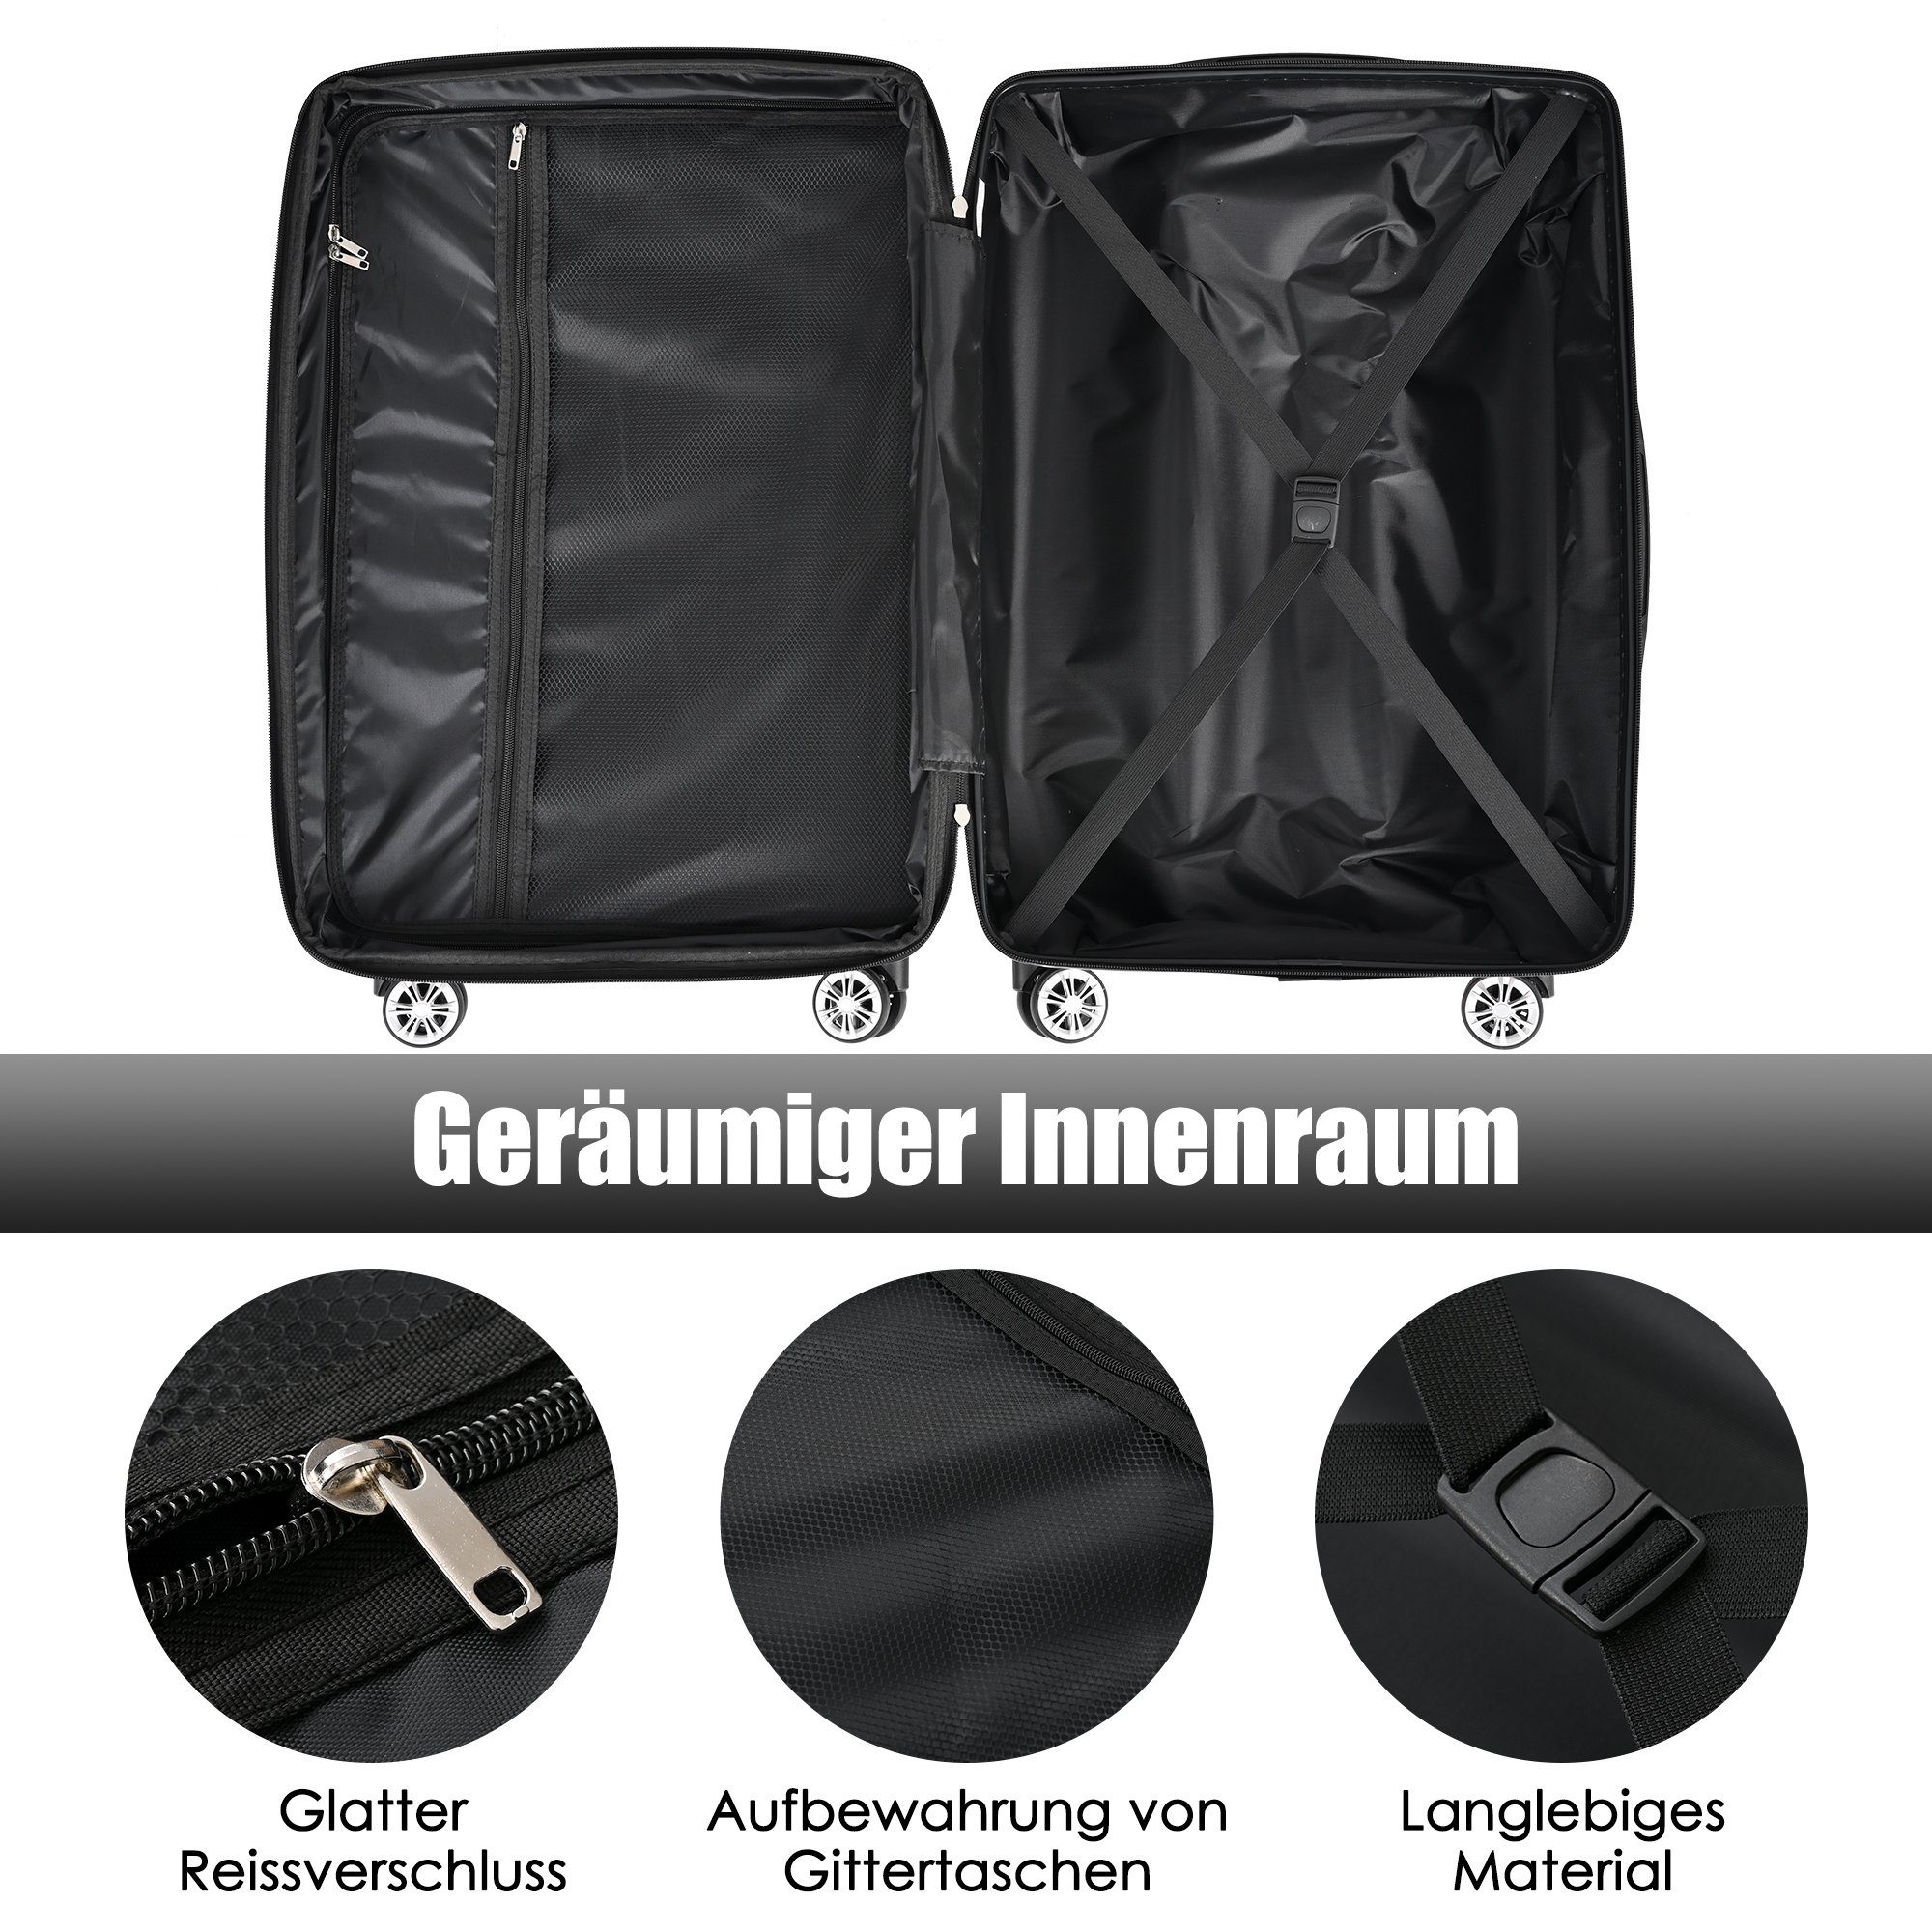 Grau Ulife 4 ABS-Material, Reisekoffer Rollen, Handgepäck-Trolley TSA Zollschloss, M-Größe:56.5*37.5*22.5